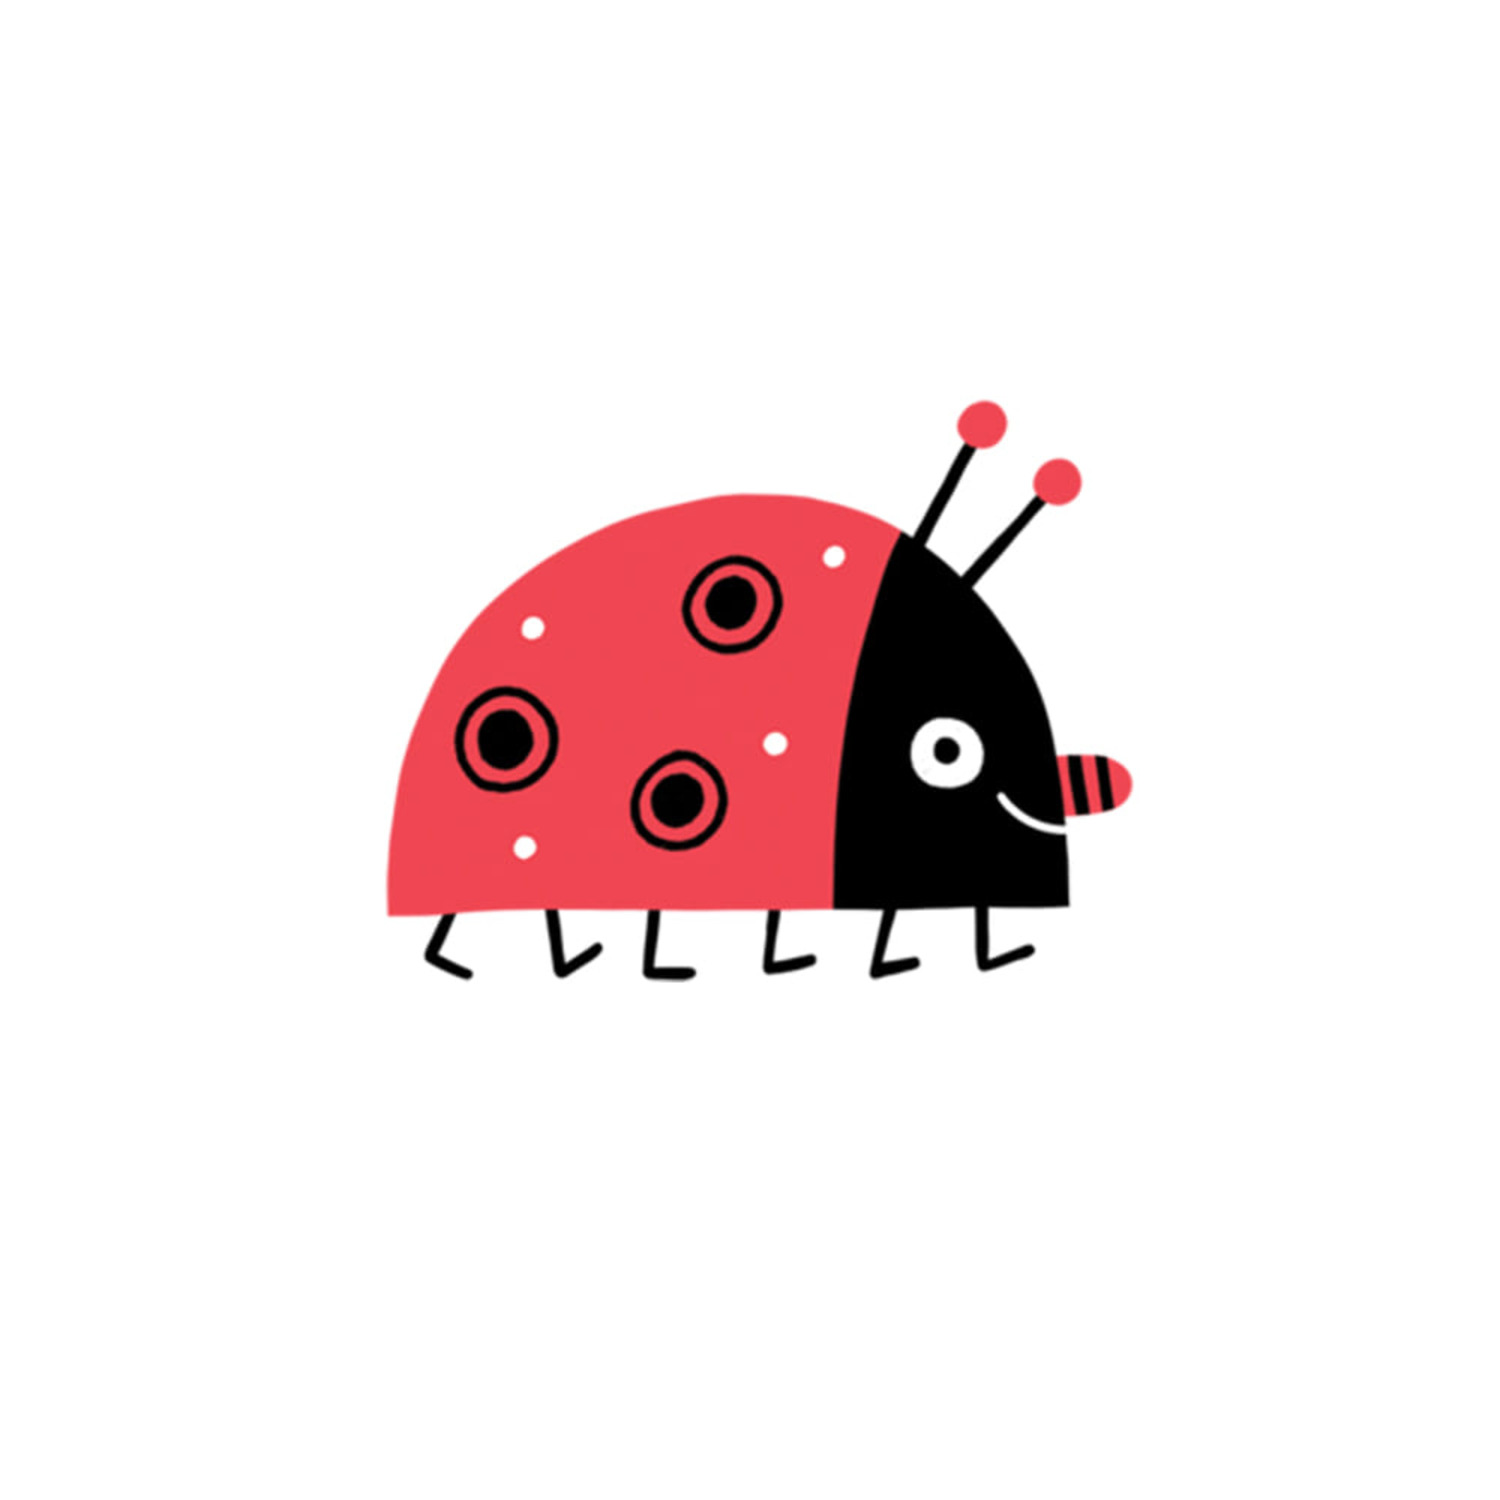 태틀리 Mr. Ladybug 타투스티커 페어 2매